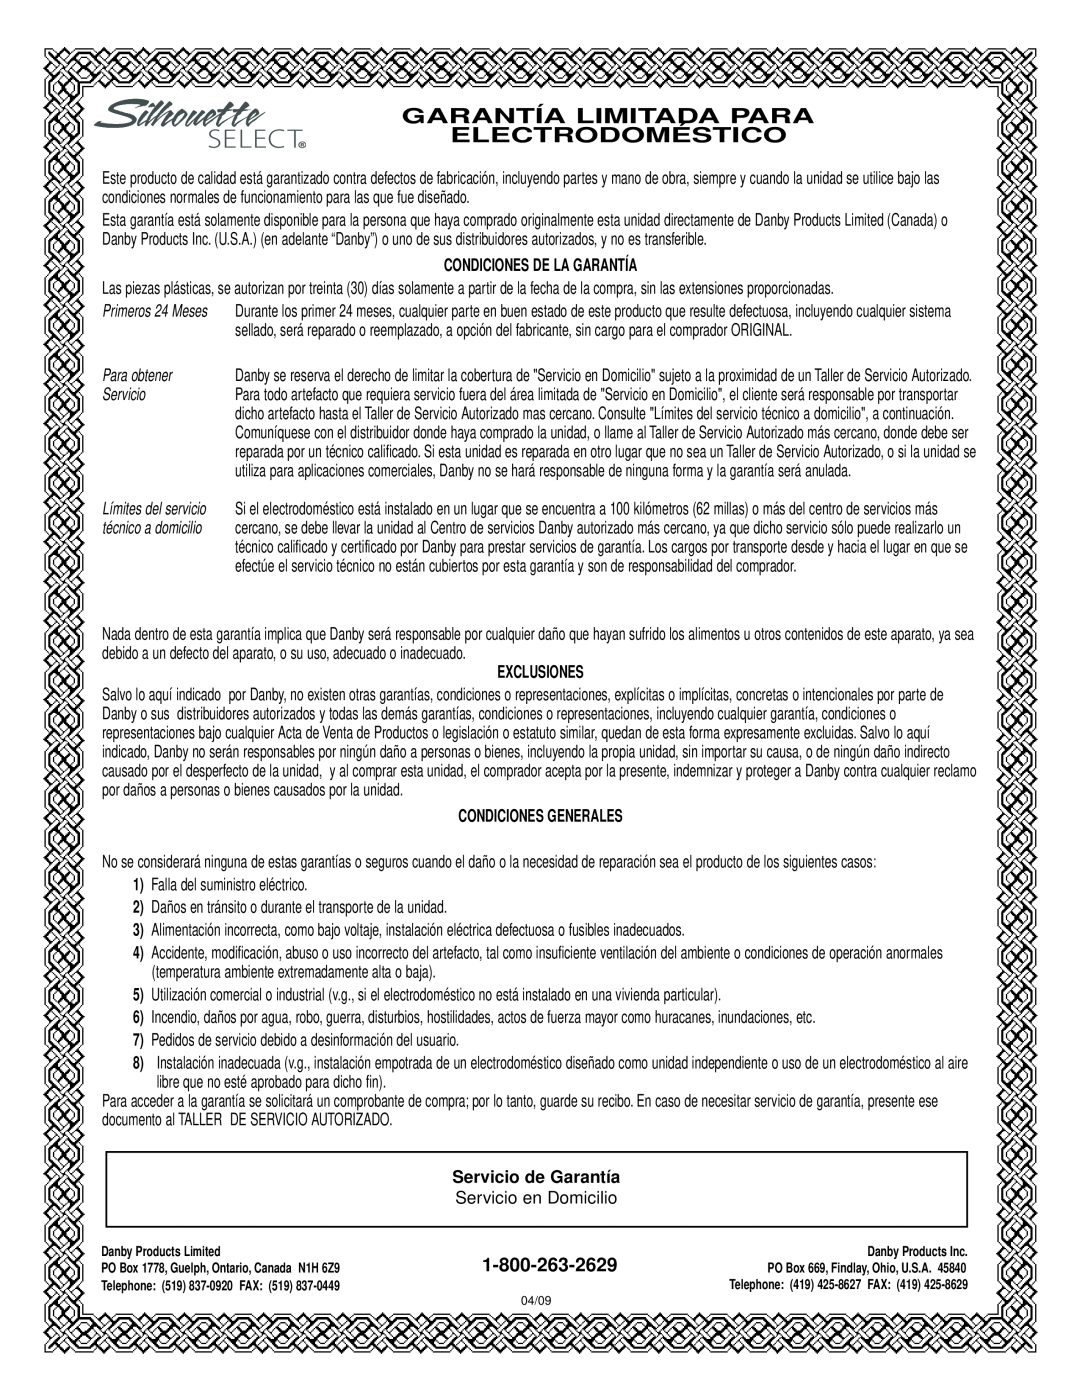 Danby DAR154BLSST manual Condiciones De La Garantía, Para obtener, Servicio, Exclusiones, Condiciones Generales 